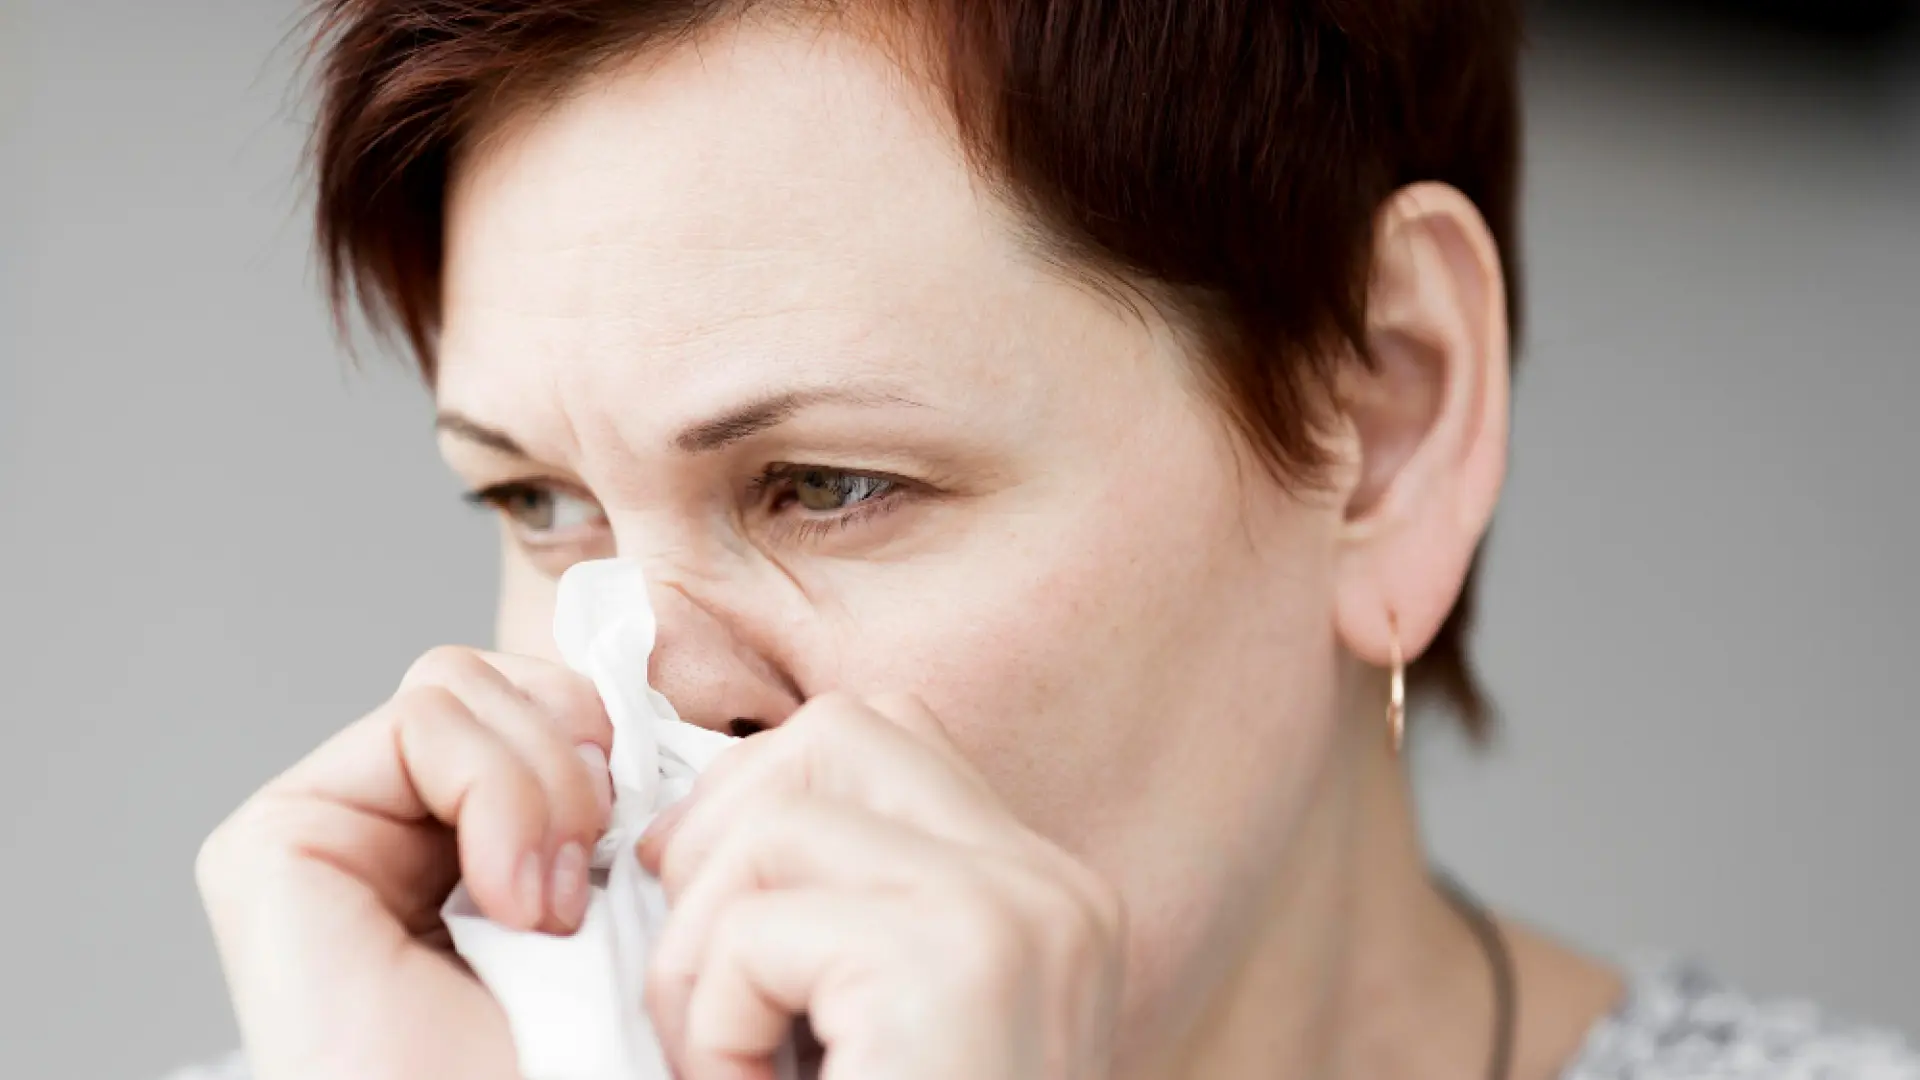 El truco para eliminar de forma inmediata la congestión nasal: "Mantenlo 10 segundos"